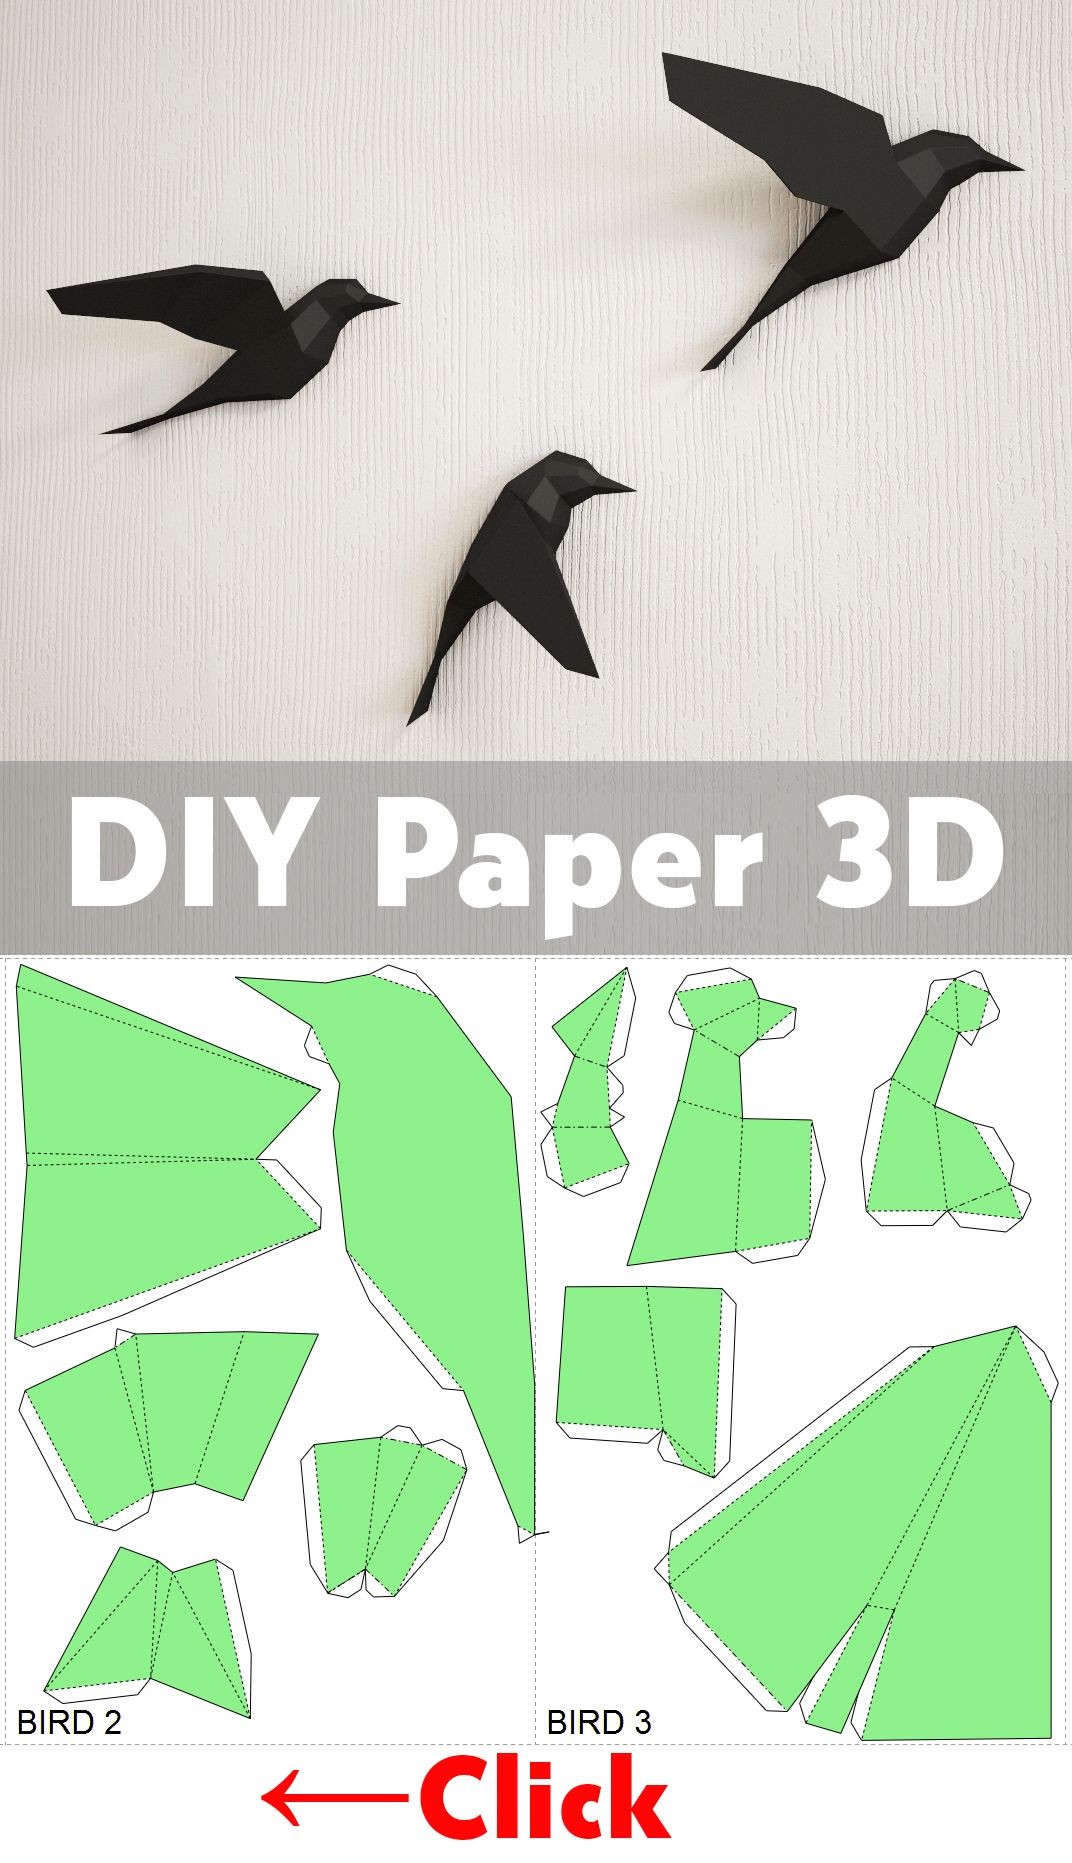 Papercraft Birds Diy Paper Birds On Wall 3d Papercraft Easy Paper Model Sculpture